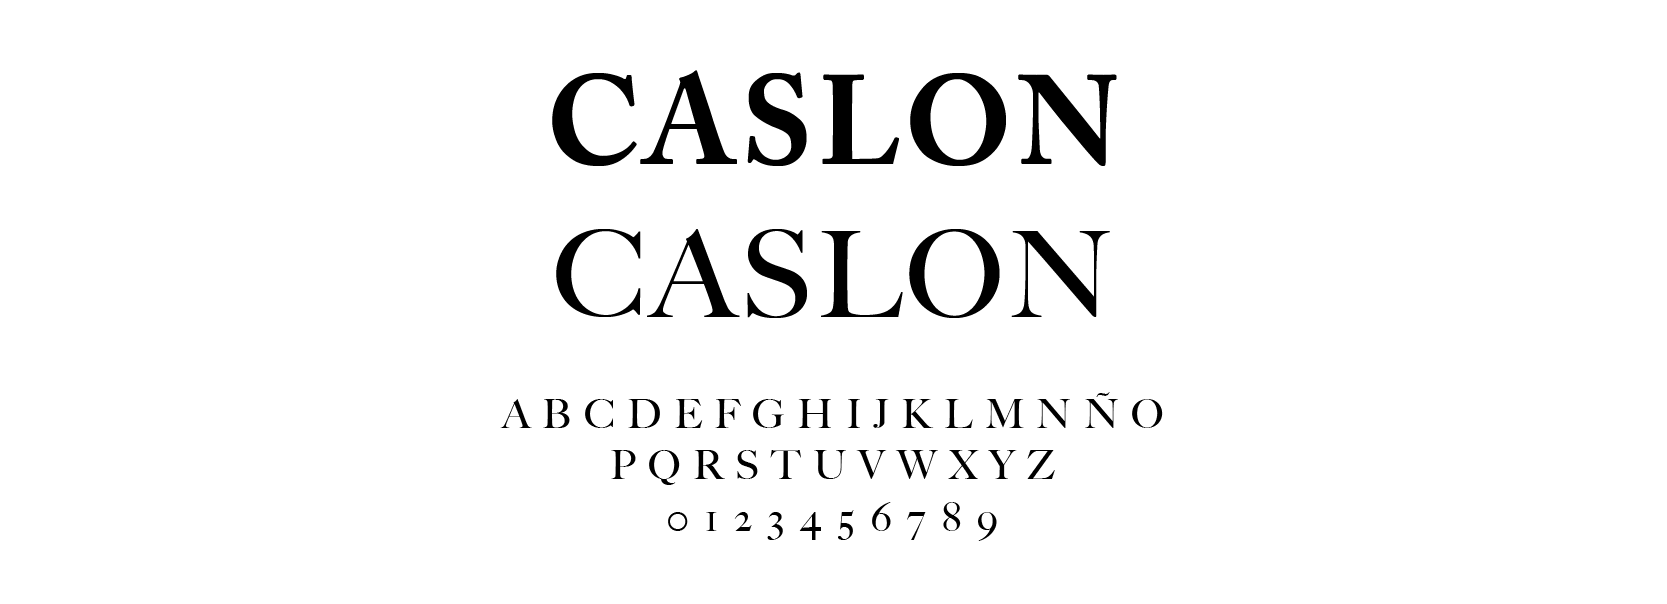 Tipografía William Carslon 1734